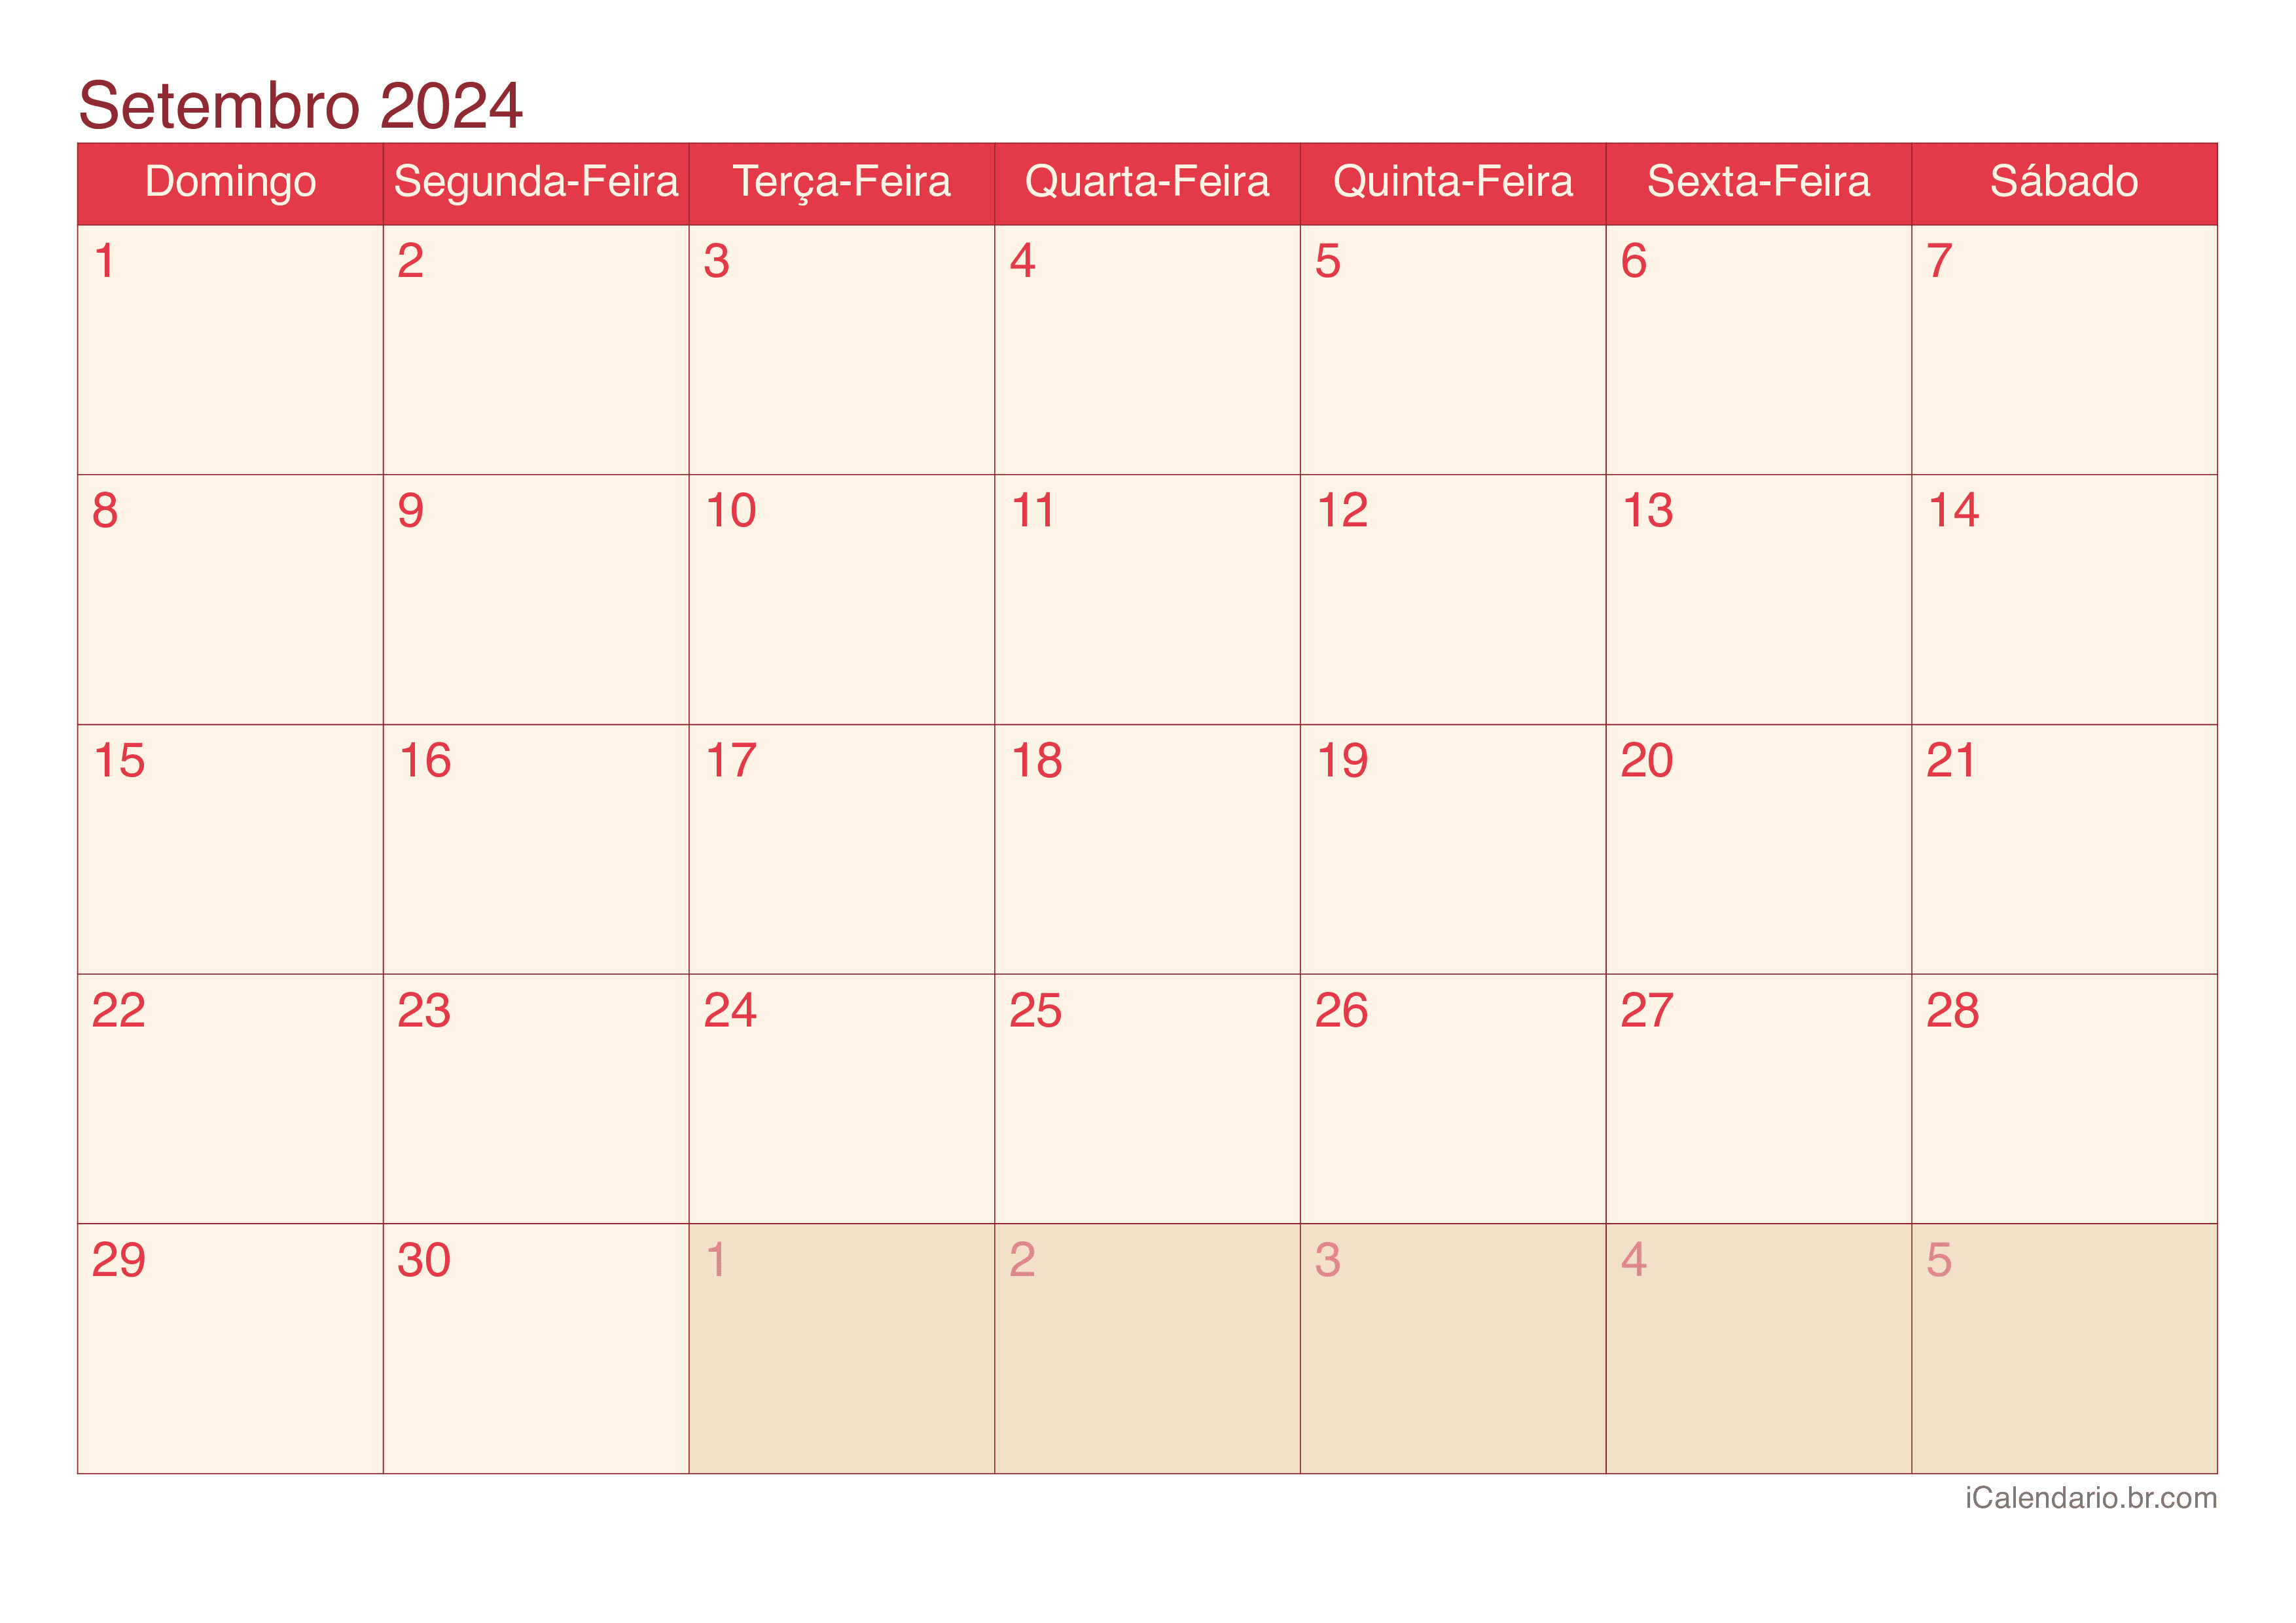 Calendário de setembro 2024 - Cherry